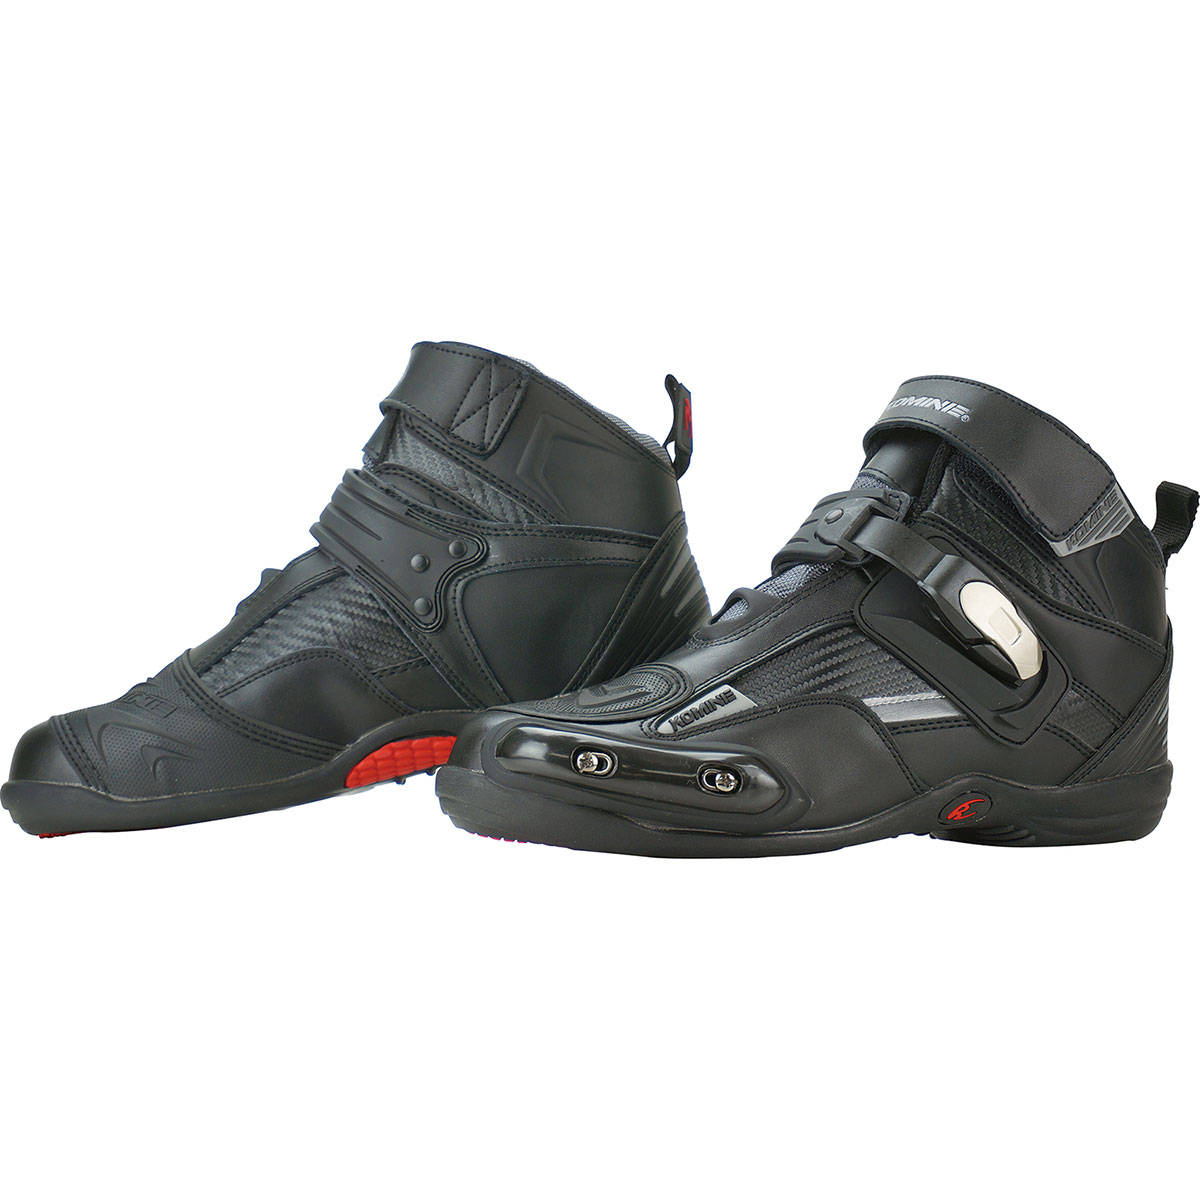 コミネ (Komine) バイク用 フットウェア シューズ ブーツ footwear Shoes Boots BK-075 ライディングシューズ ブラック 黒 25.0cm 05-075/BK/25